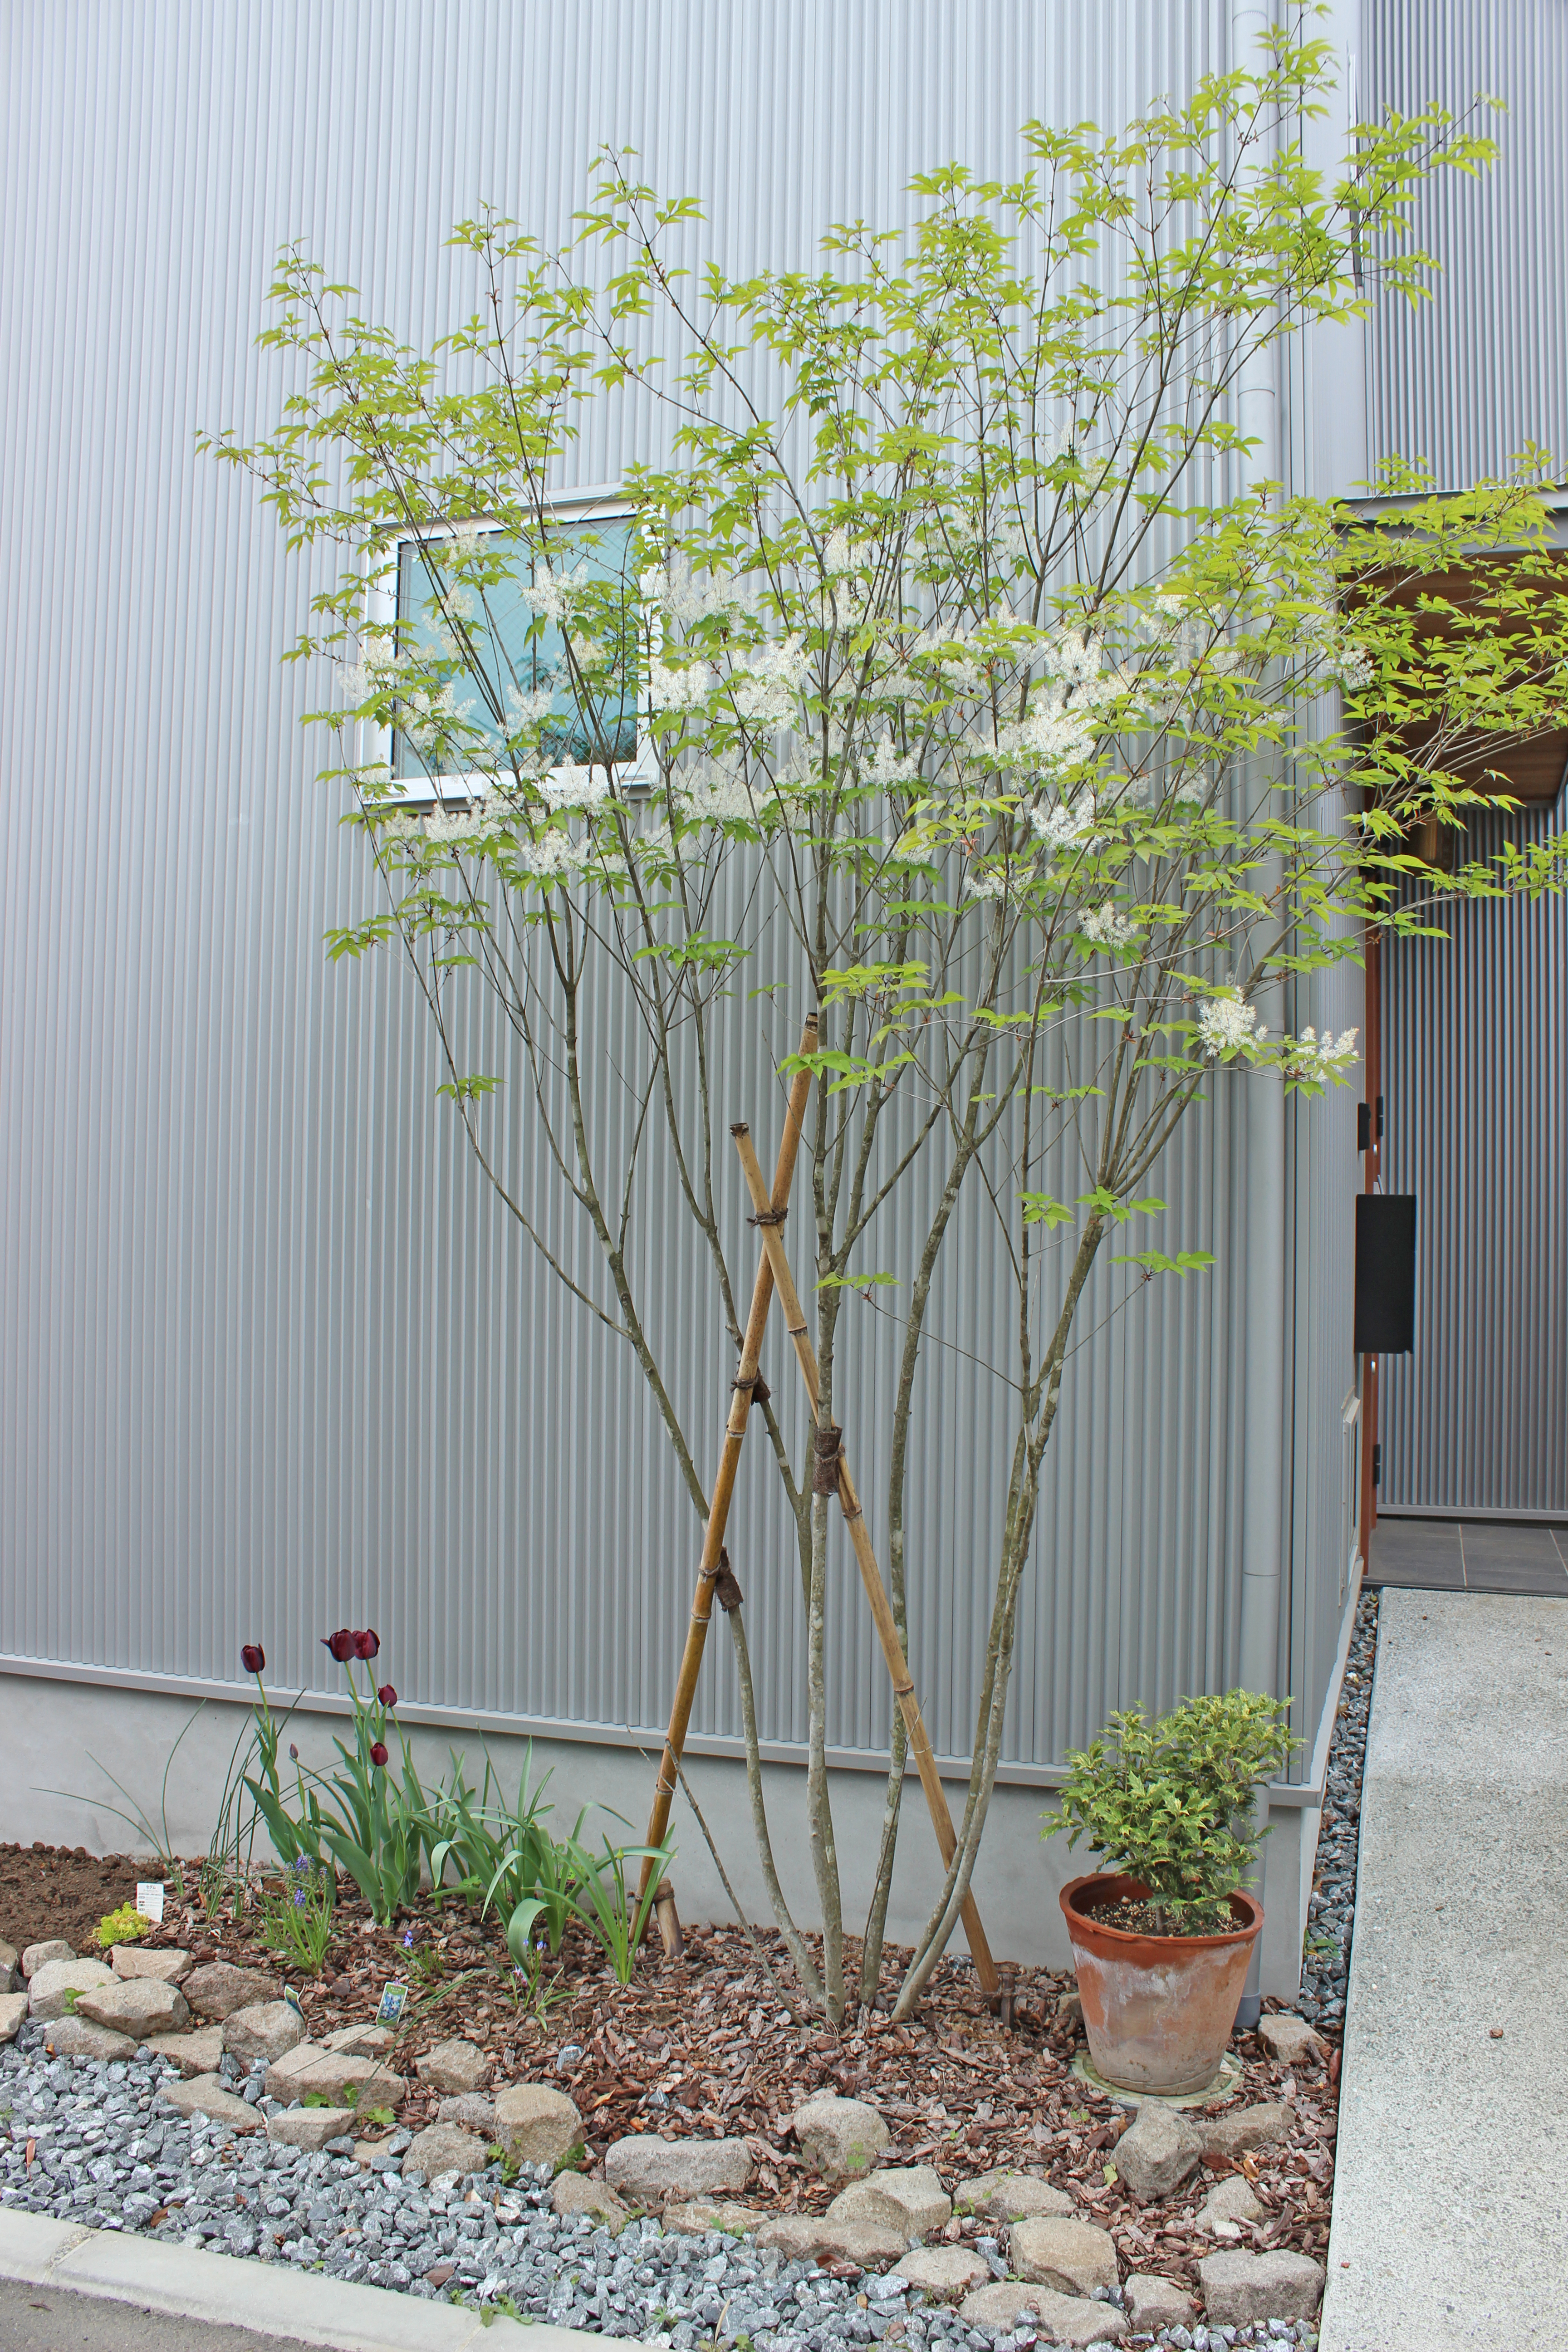 ナチュラルガーデンに大人気 雑木風樹木 アオダモ 横浜 川崎のエクステリア 工事なら新建エクスプランニング